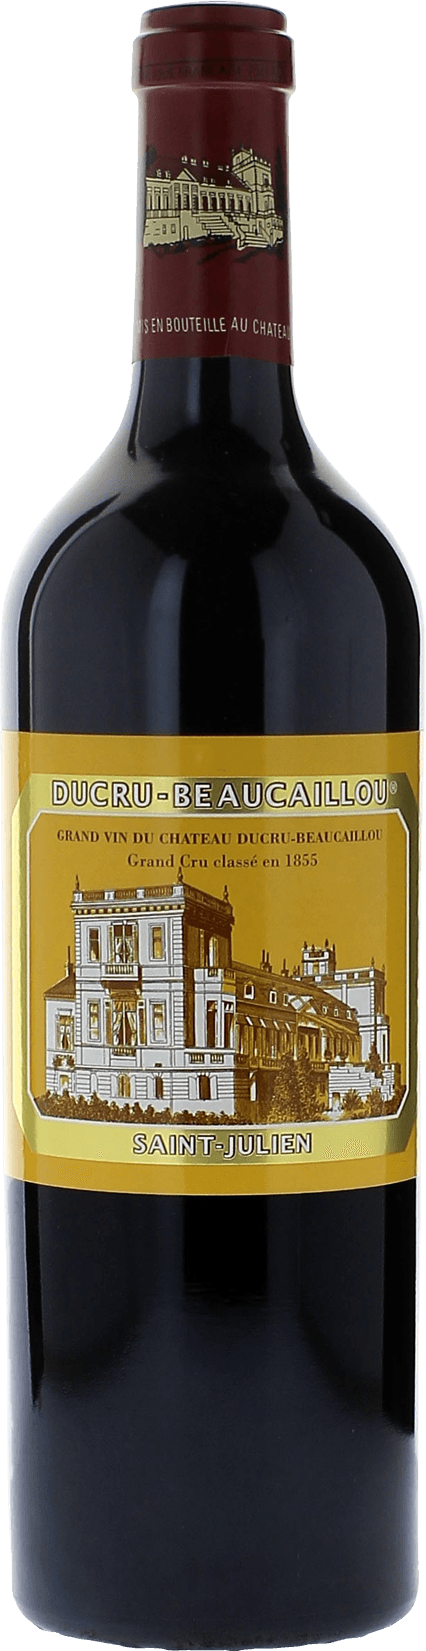 Ducru beaucaillou 2016 2me Grand cru class Saint-Julien, Bordeaux rouge